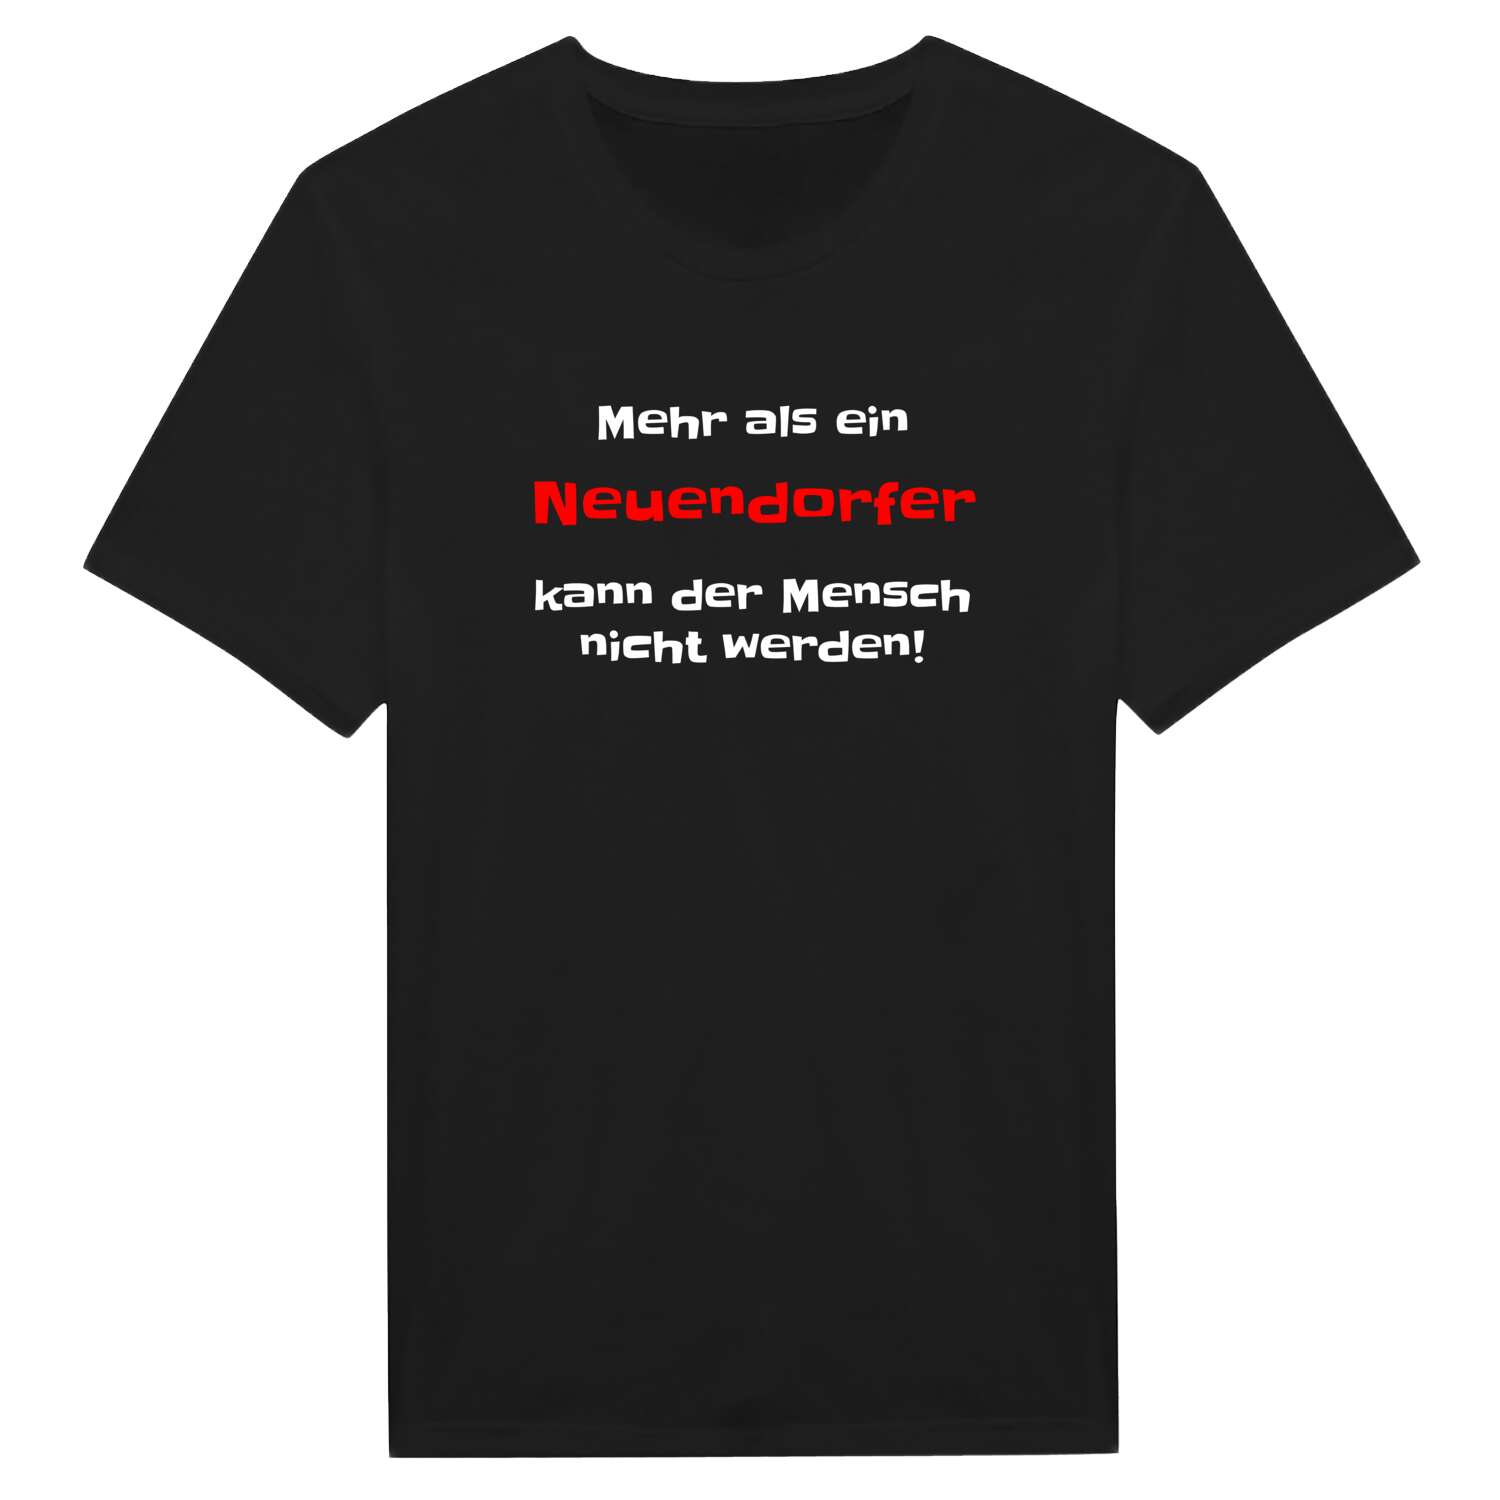 Neuendorf T-Shirt »Mehr als ein«